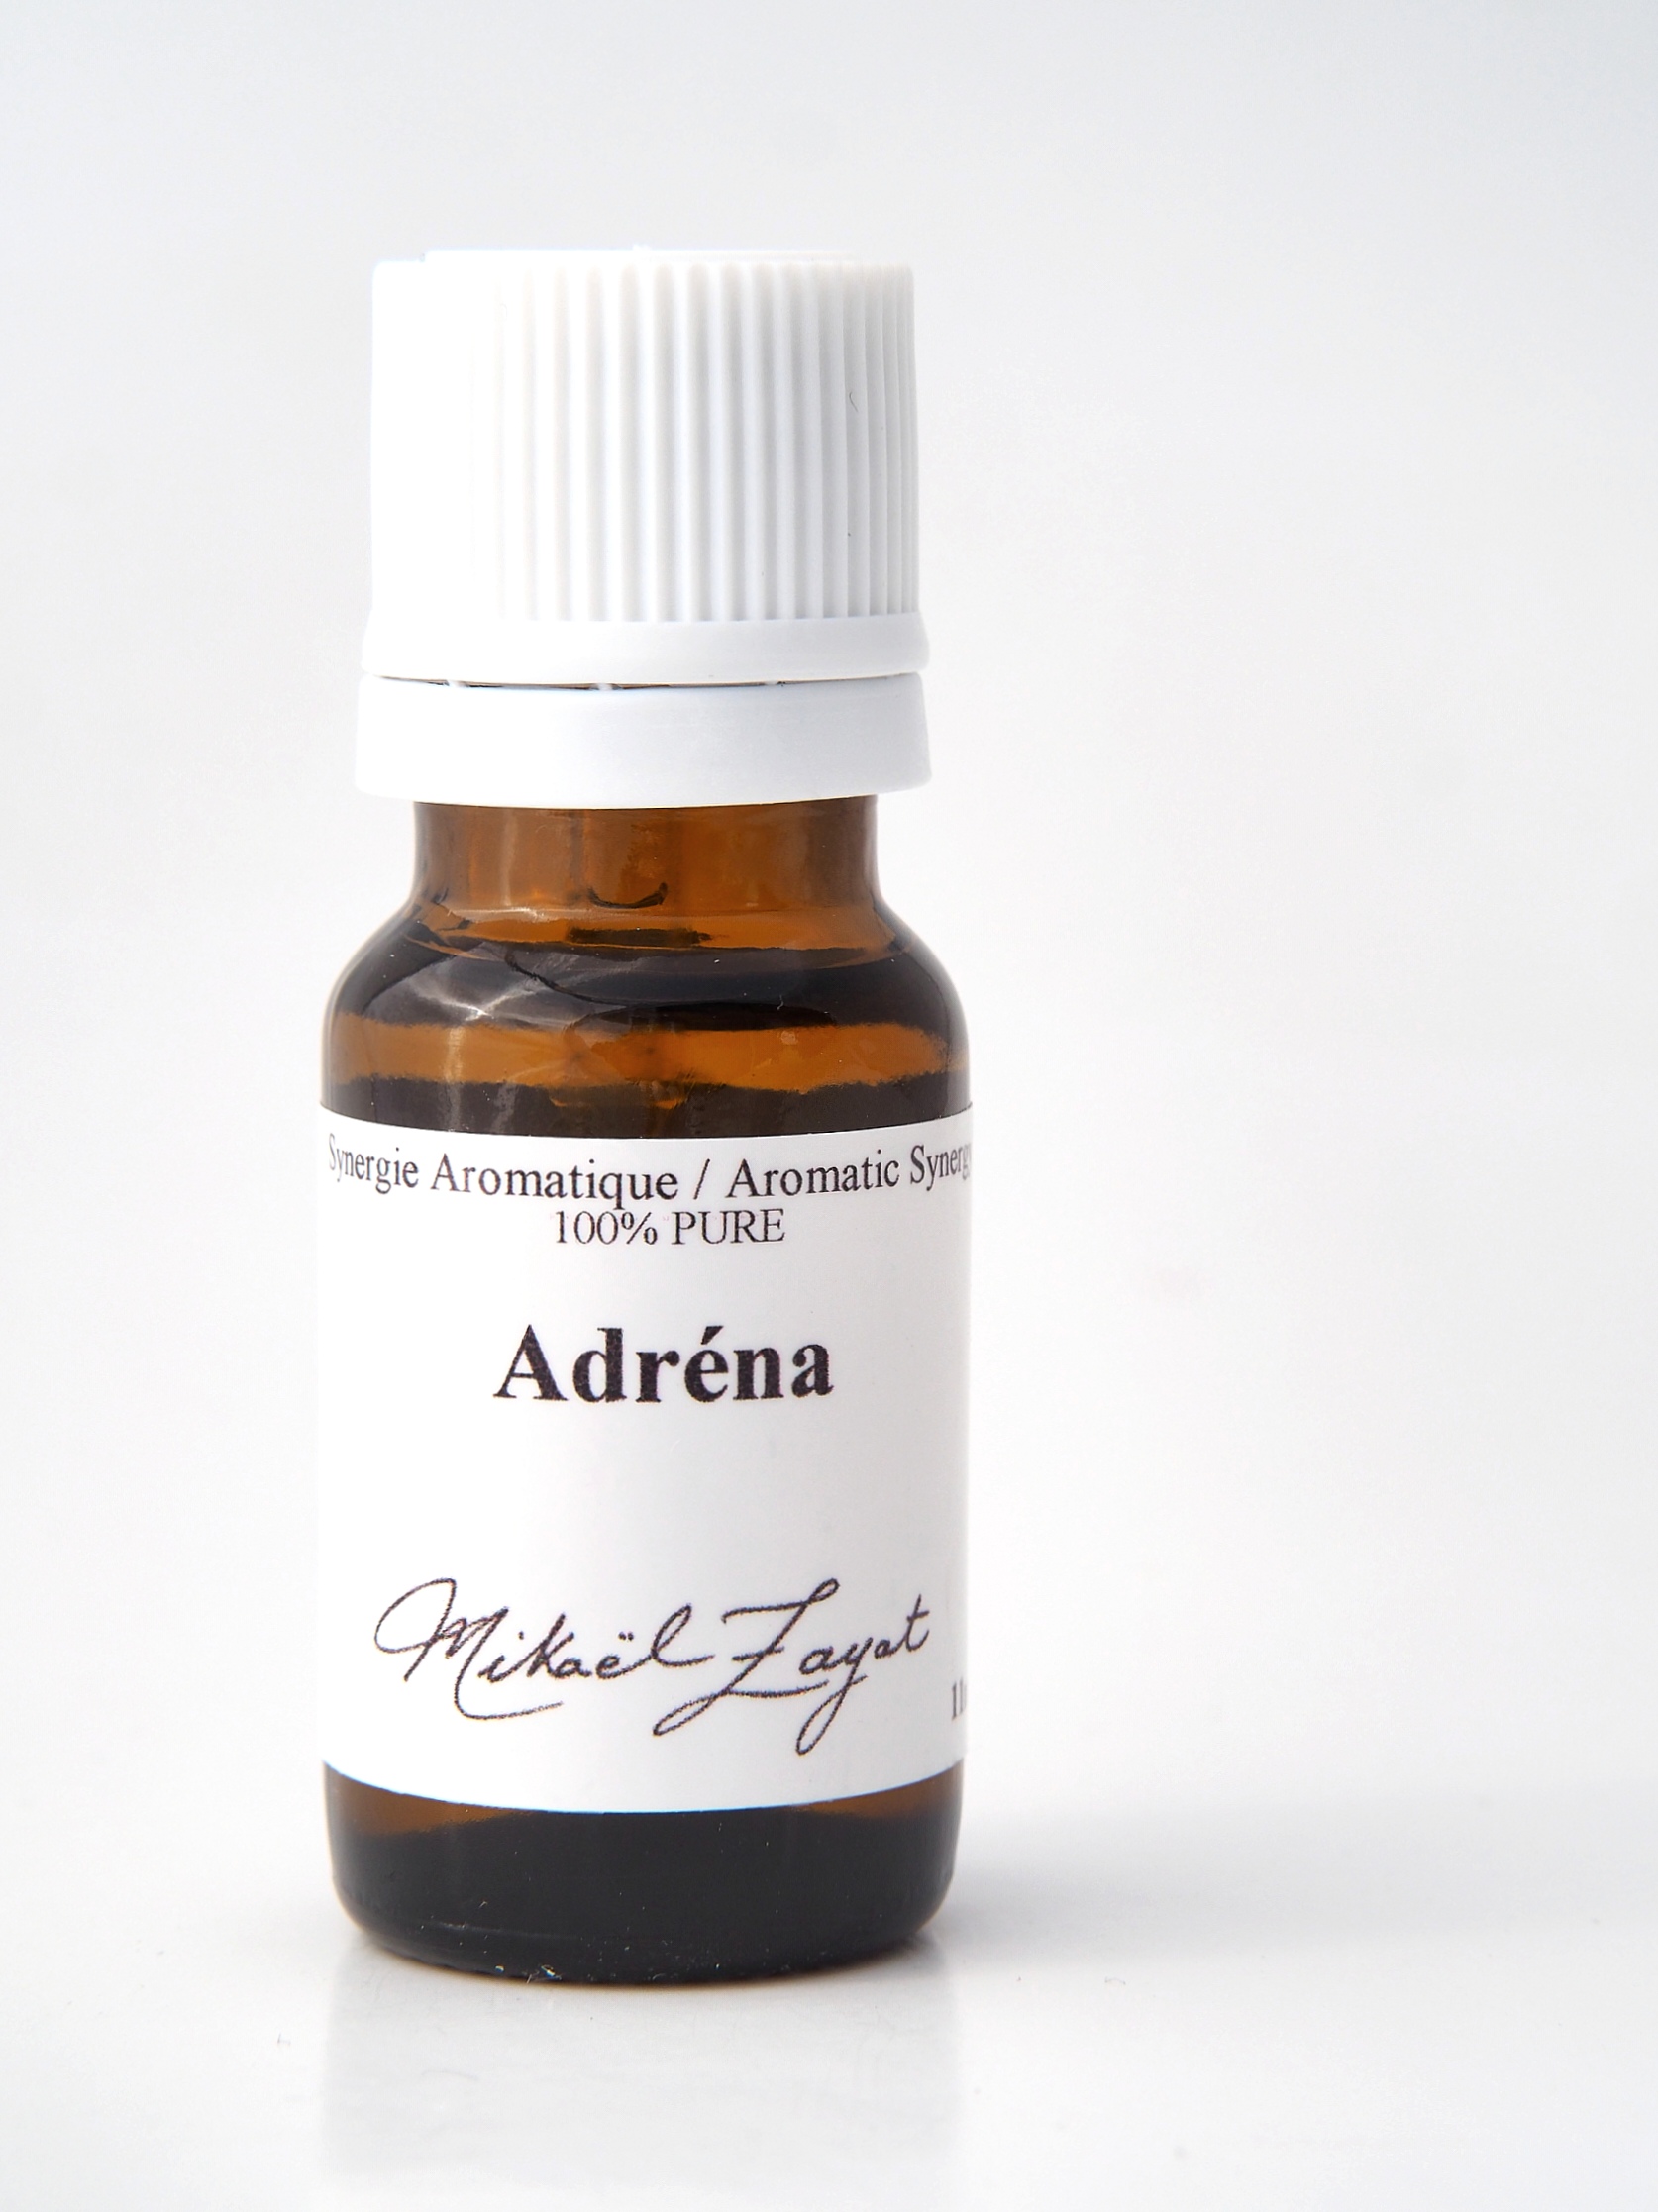 Adrena (11 ml)